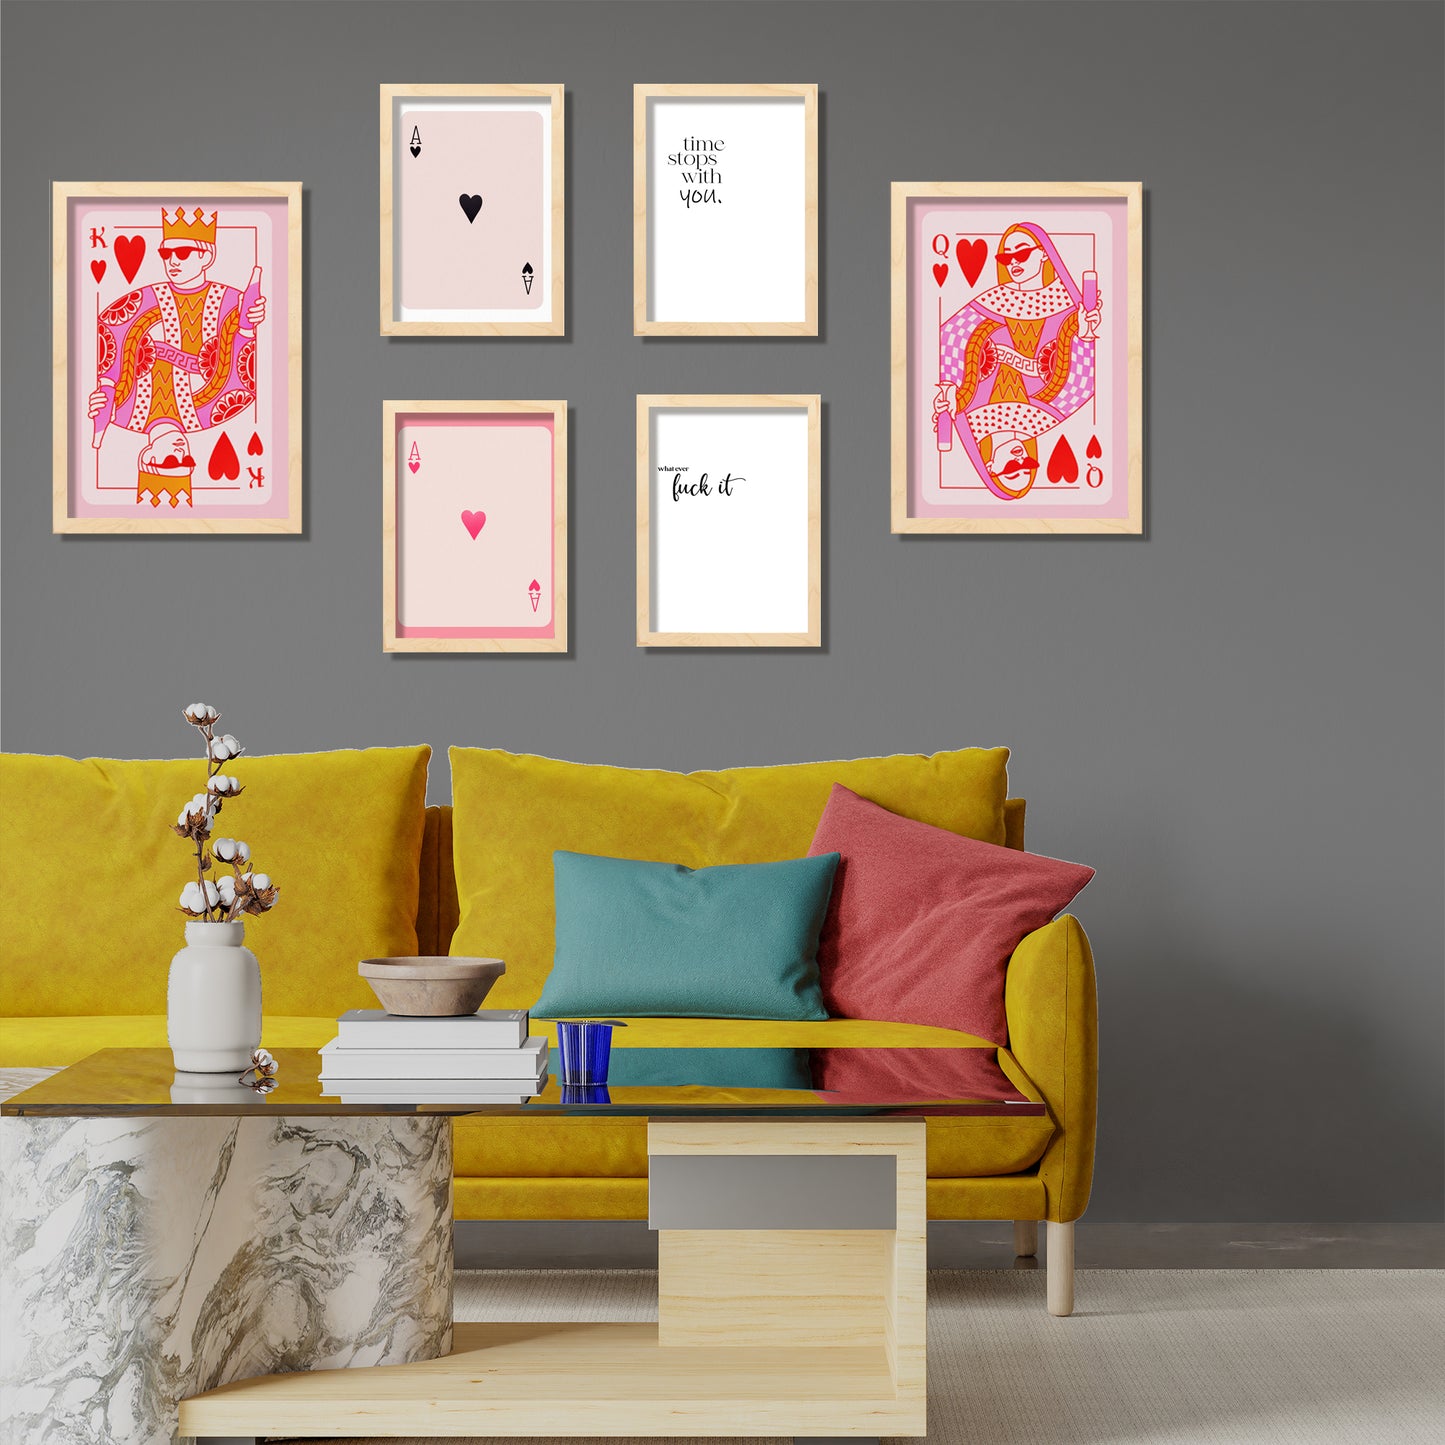 Illustraciones de arte moderno tonos rosas